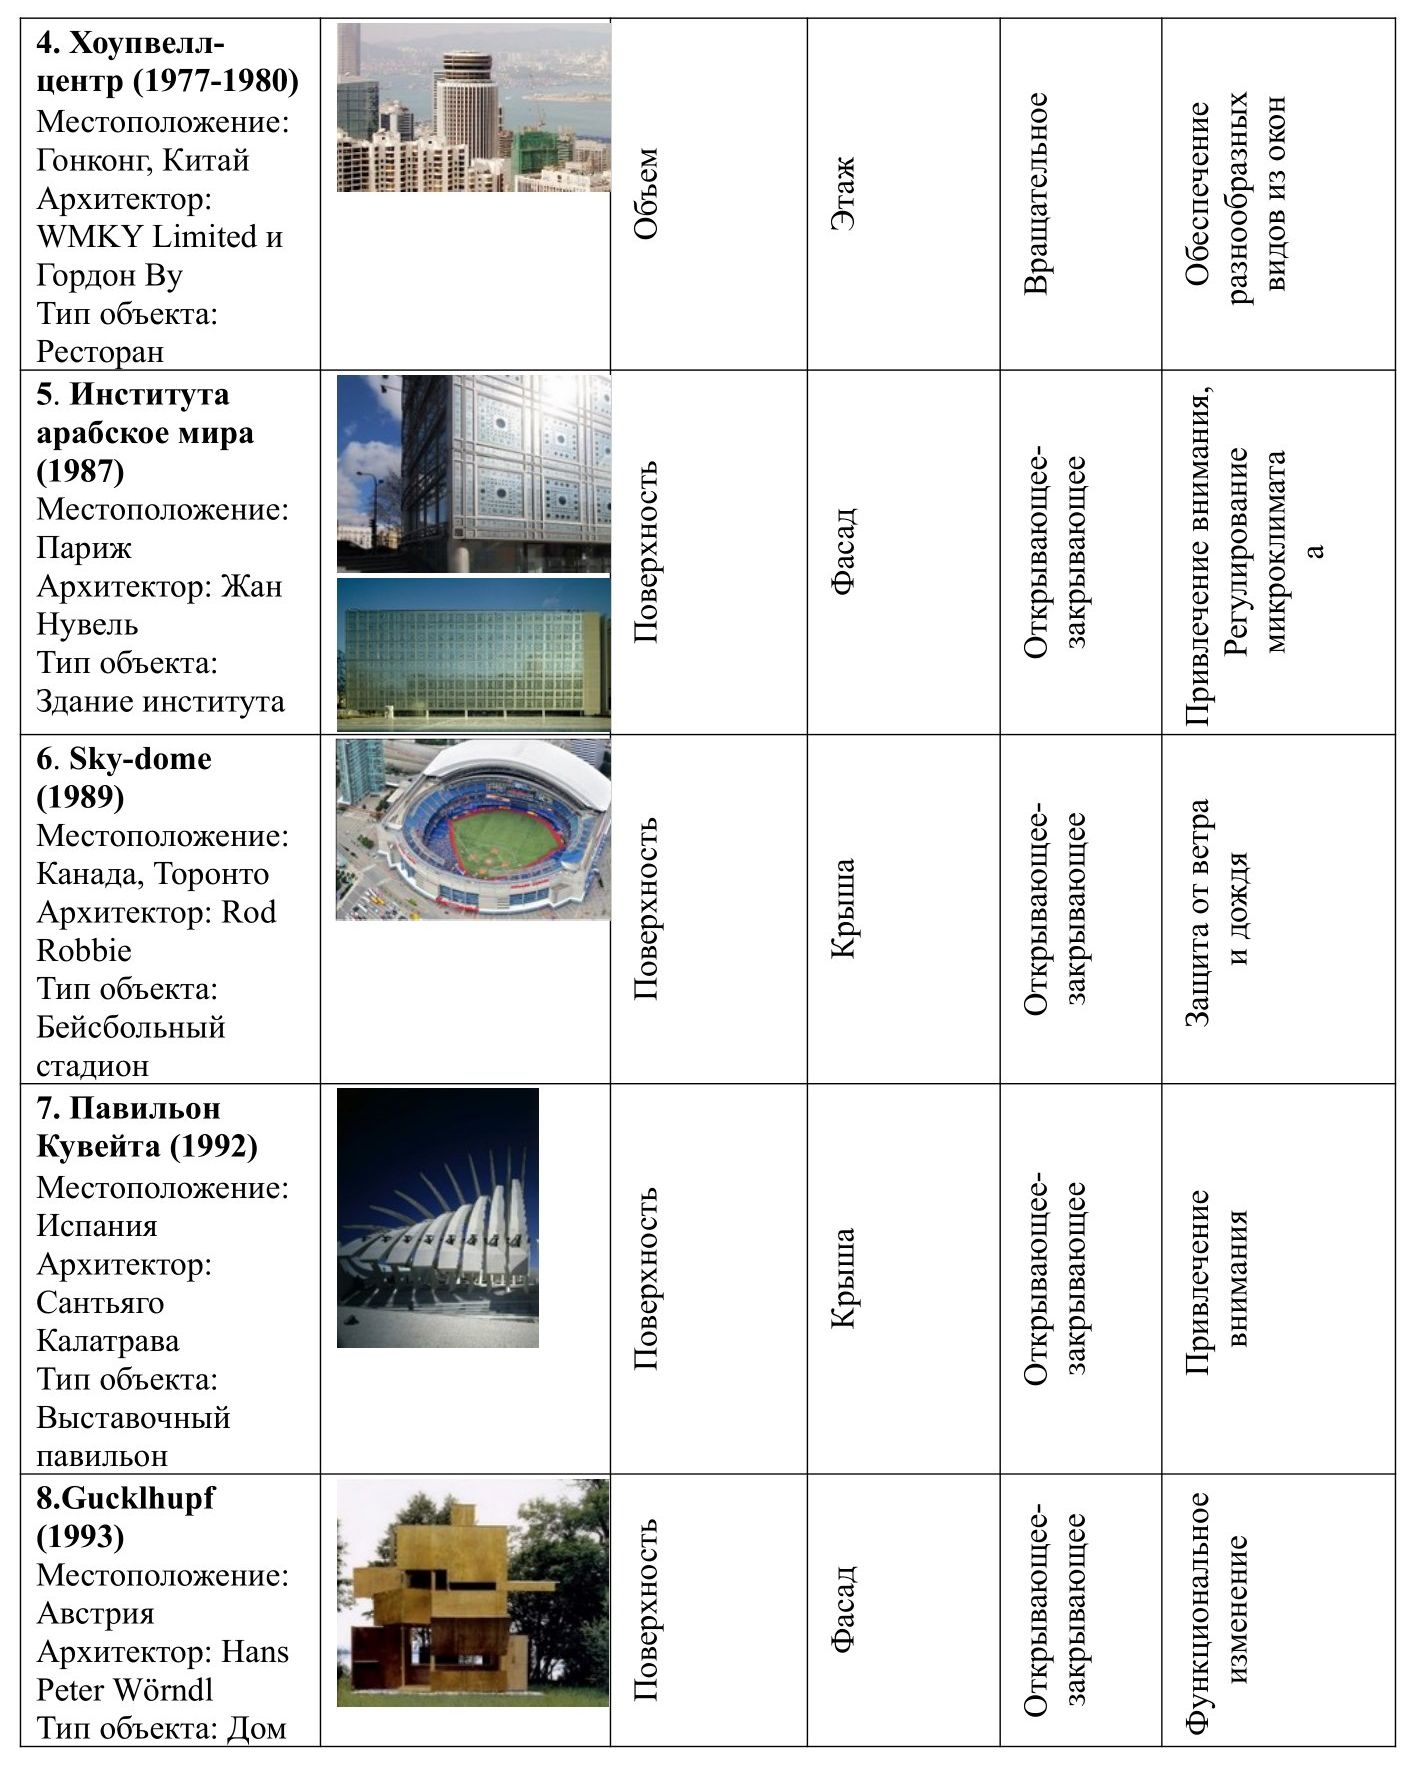 Таблица 1. Систематизация объектов кинетической архитектуры